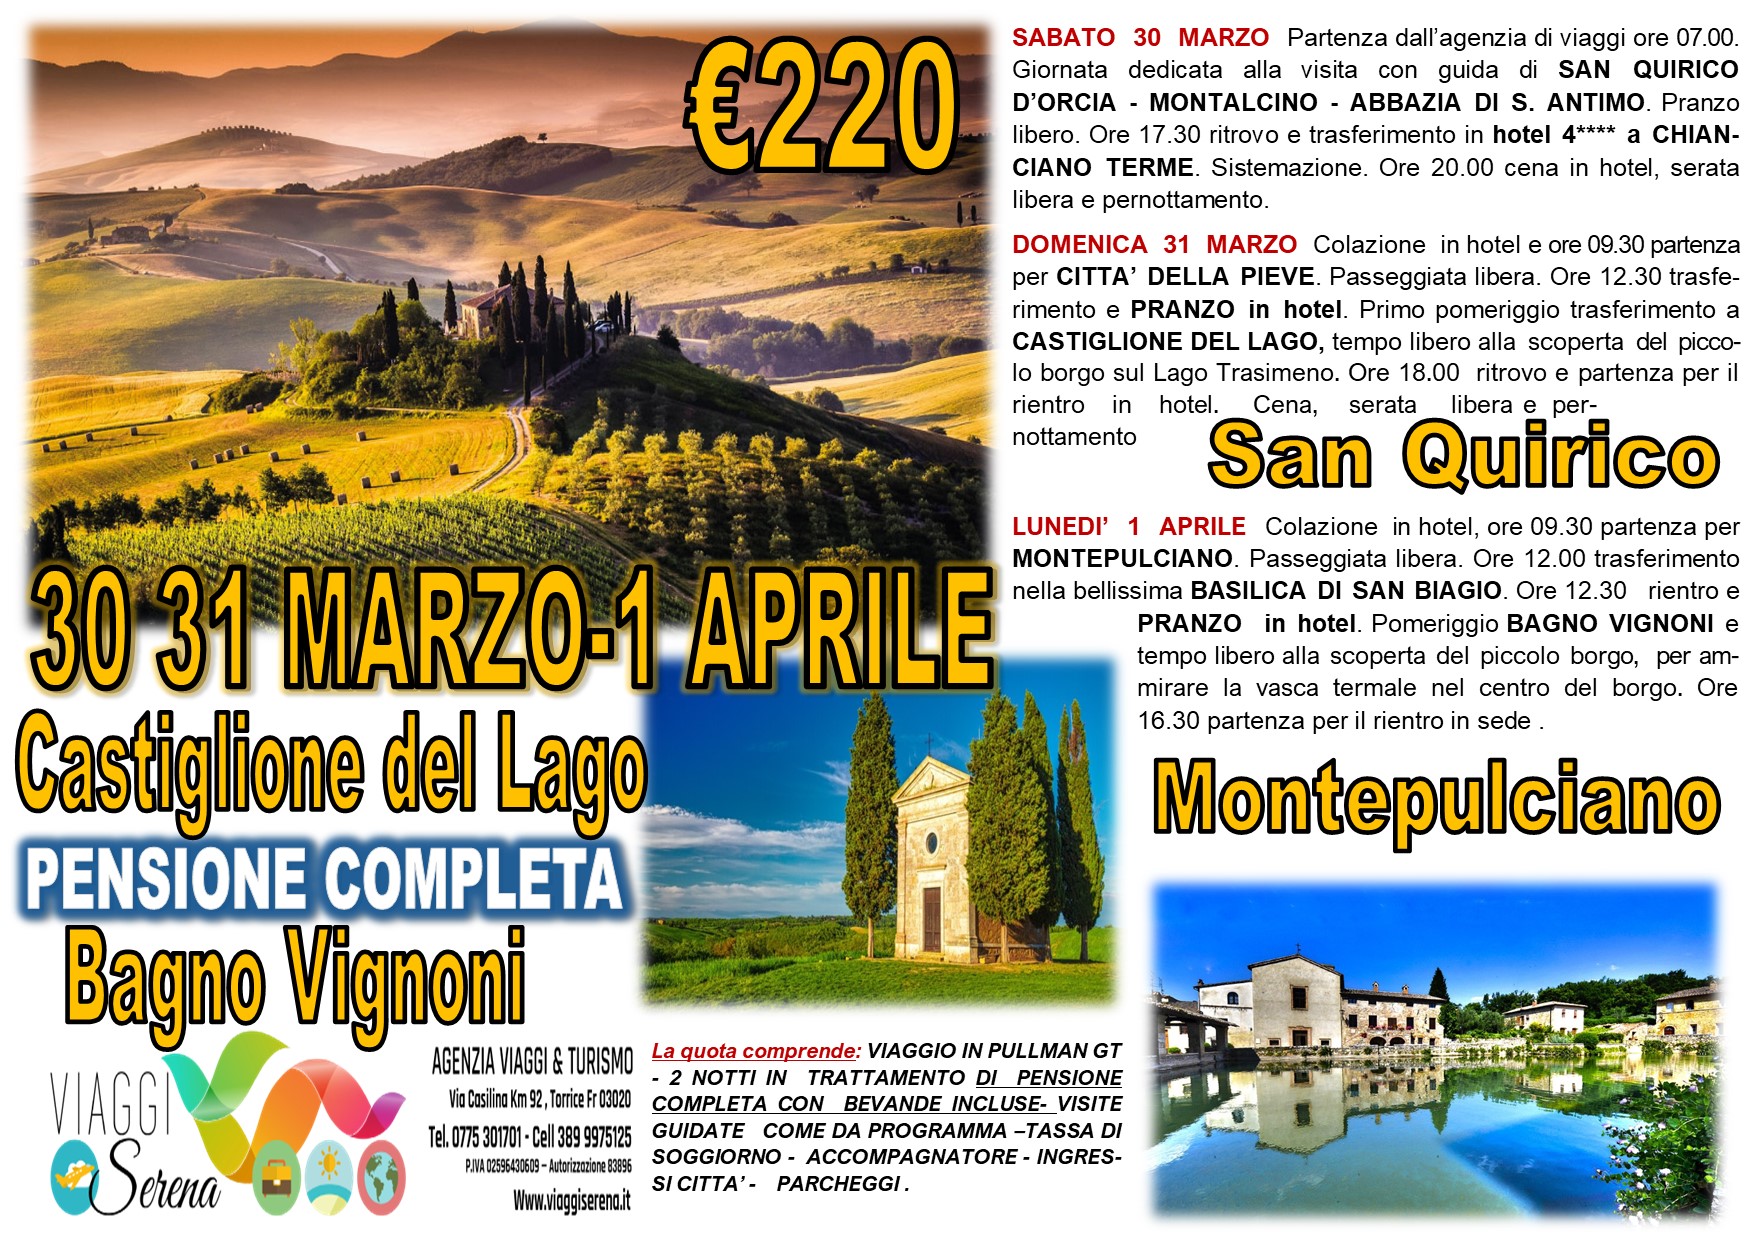 Viaggi di gruppo: Castiglione del Lago, Montepulciano, San Quirico & Bagno Vignoni 30-31 Marzo & 1 Aprile €220